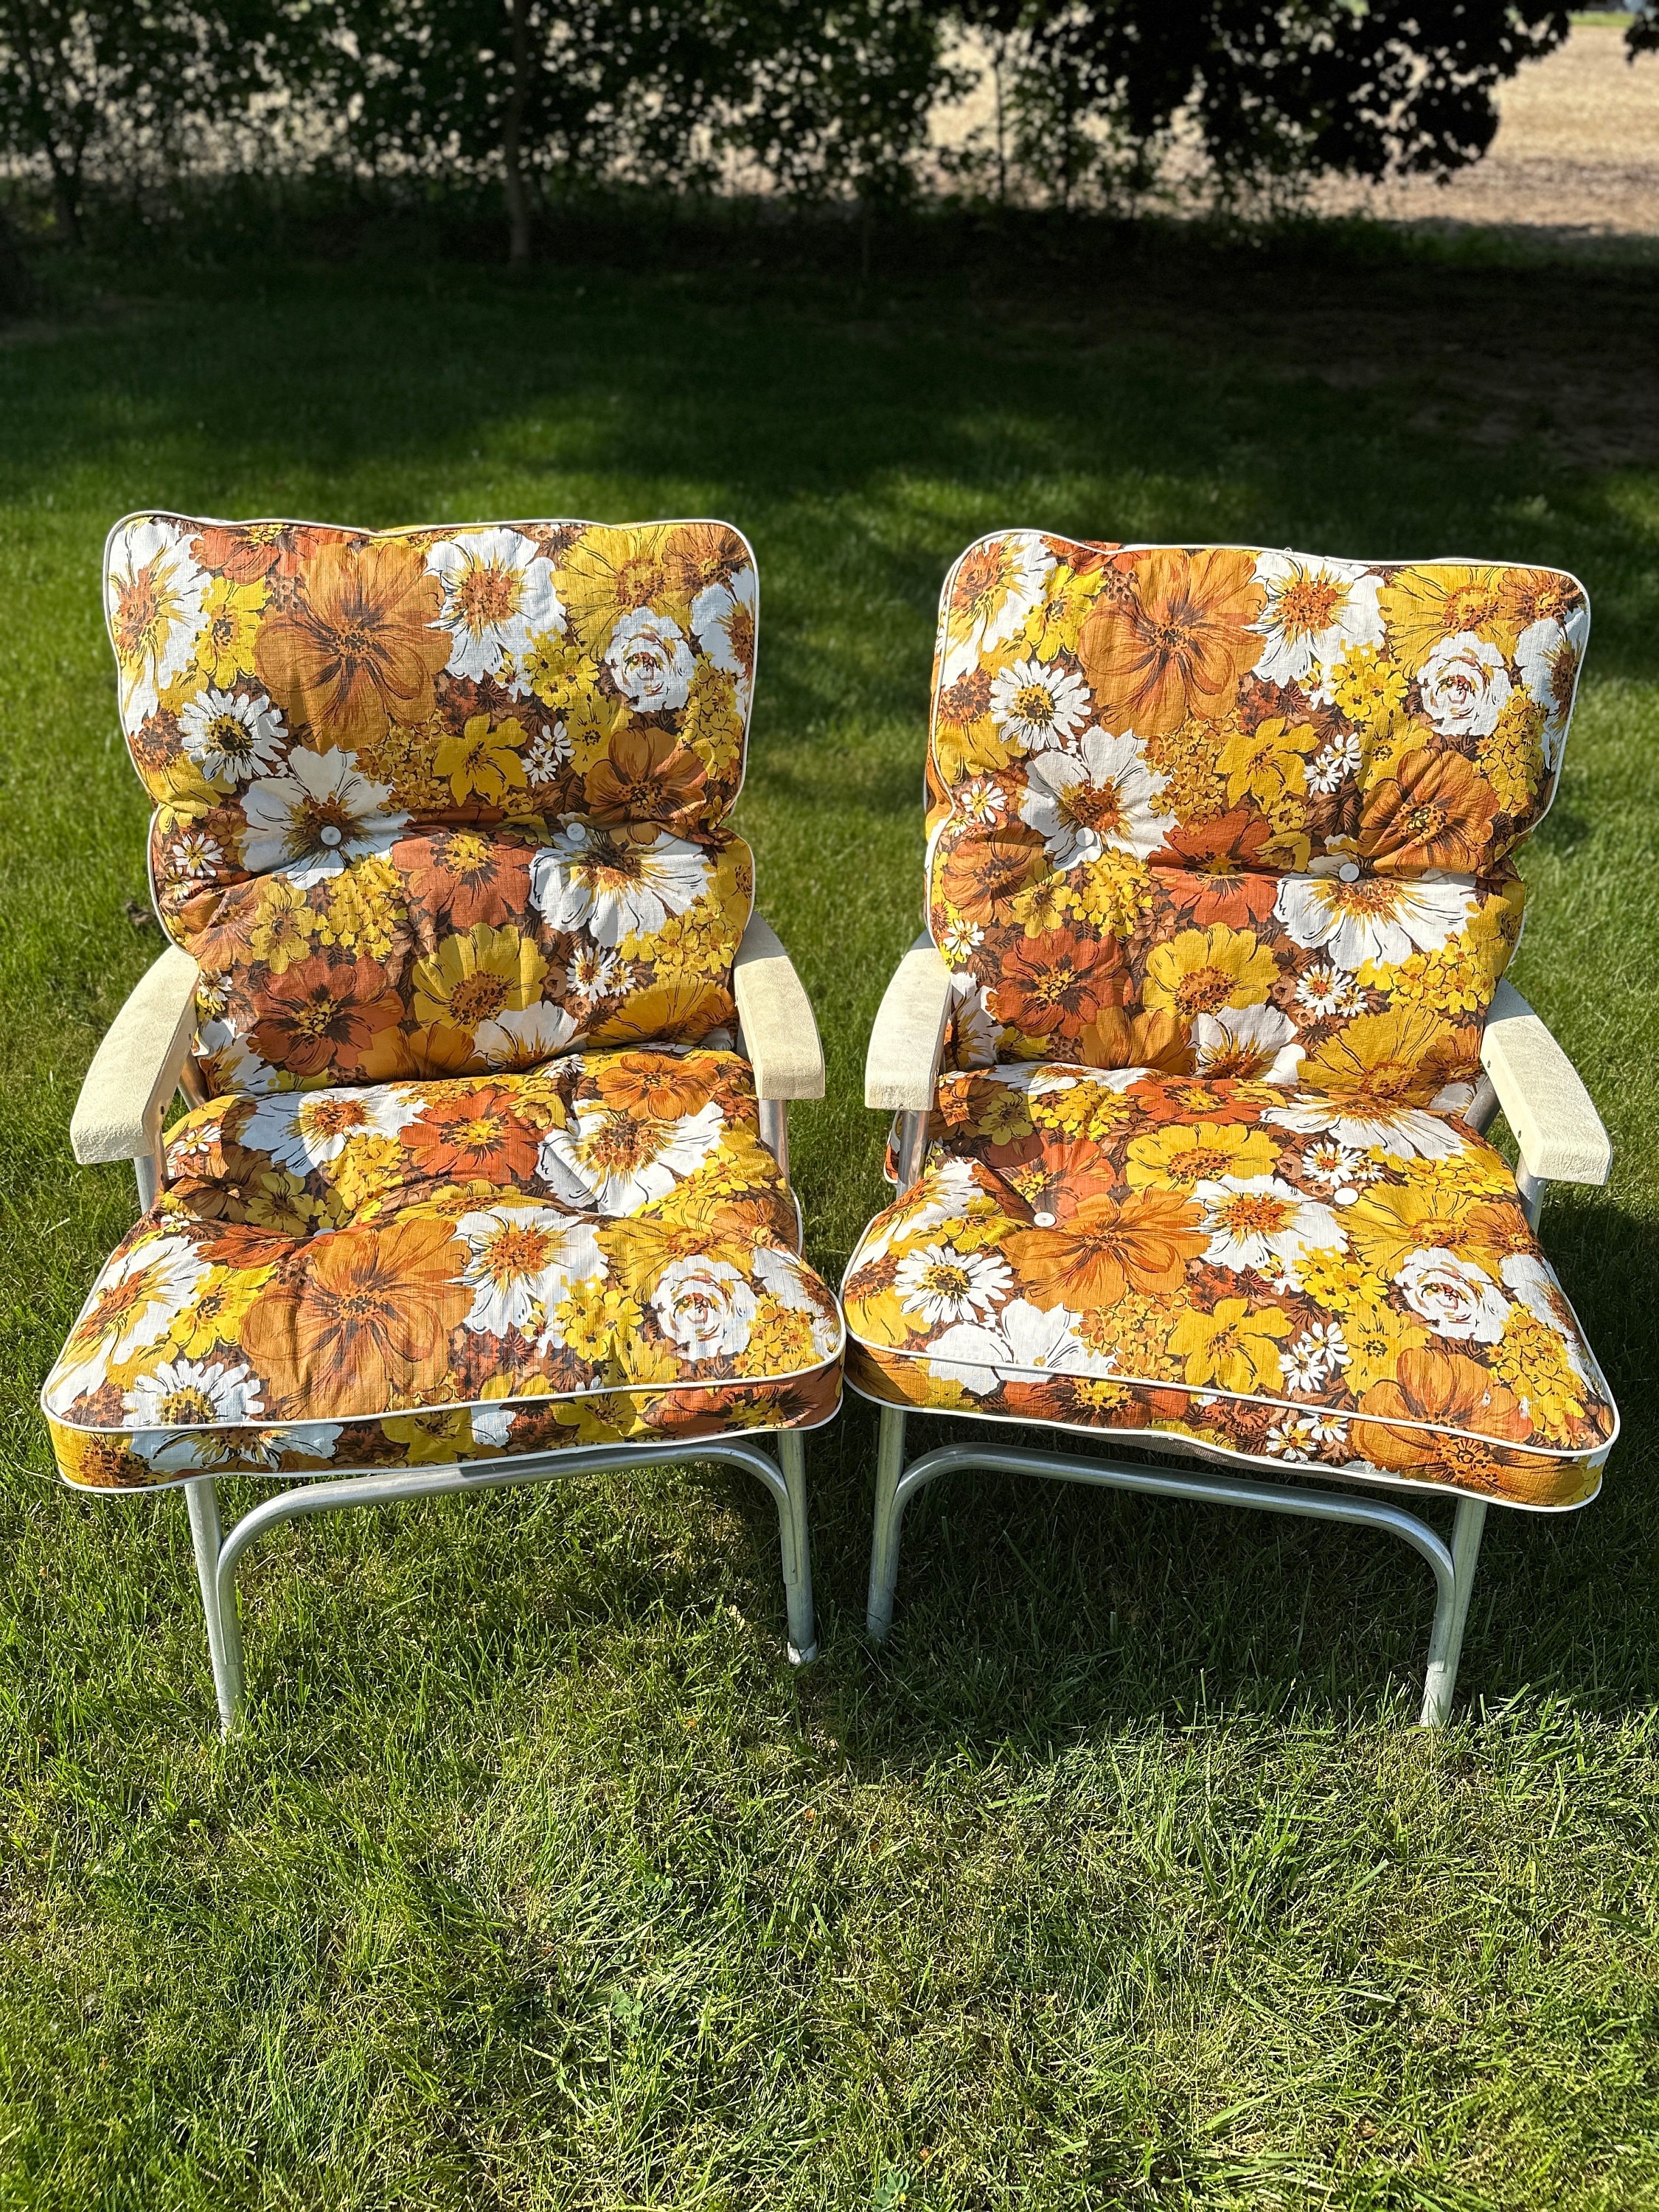 Fulton Aqua Patio Chair Cushions - Wicker Chair Cushions - Adirondack Chair  Cushions